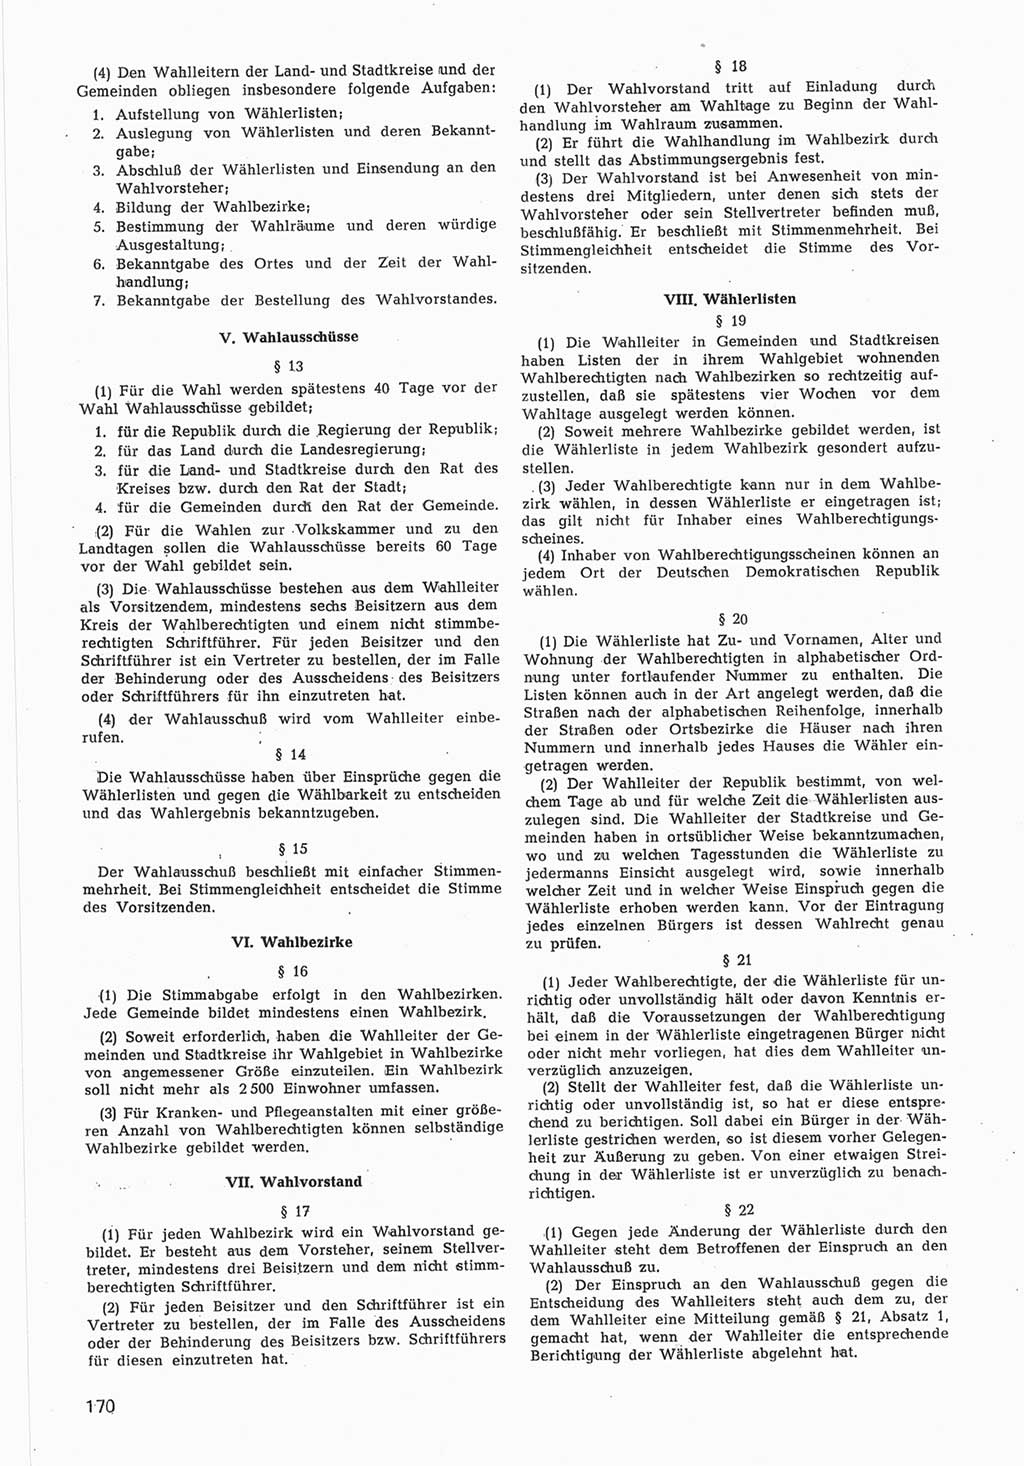 Provisorische Volkskammer (VK) der Deutschen Demokratischen Republik (DDR) 1949-1950, Dokument 772 (Prov. VK DDR 1949-1950, Dok. 772)